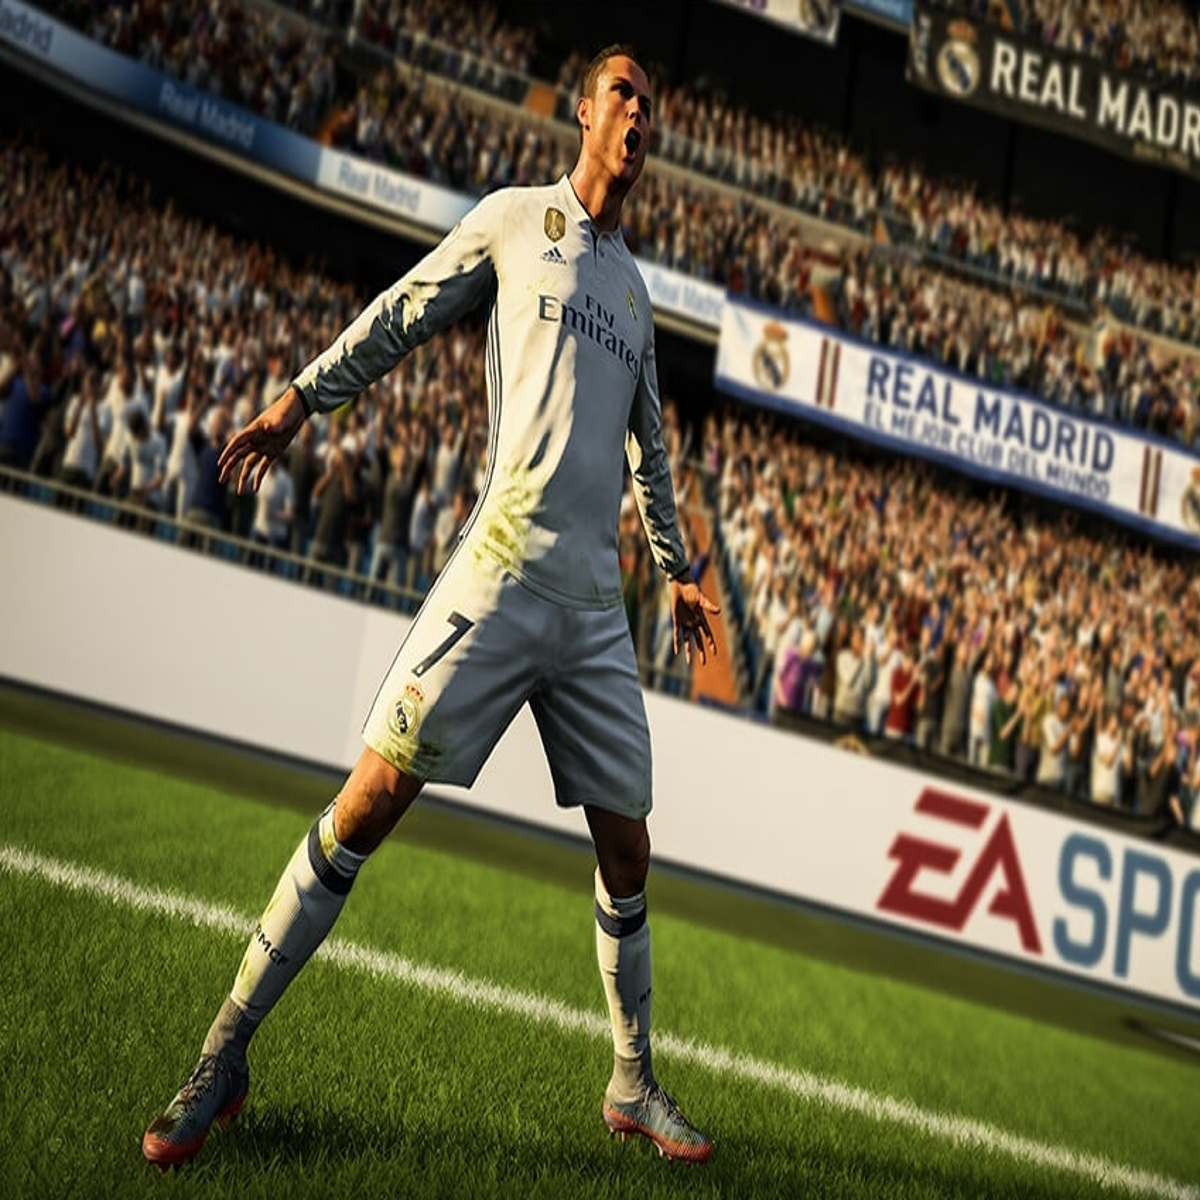 Análise: 'FIFA 18' faz o melhor do futebol nos videogames, mas